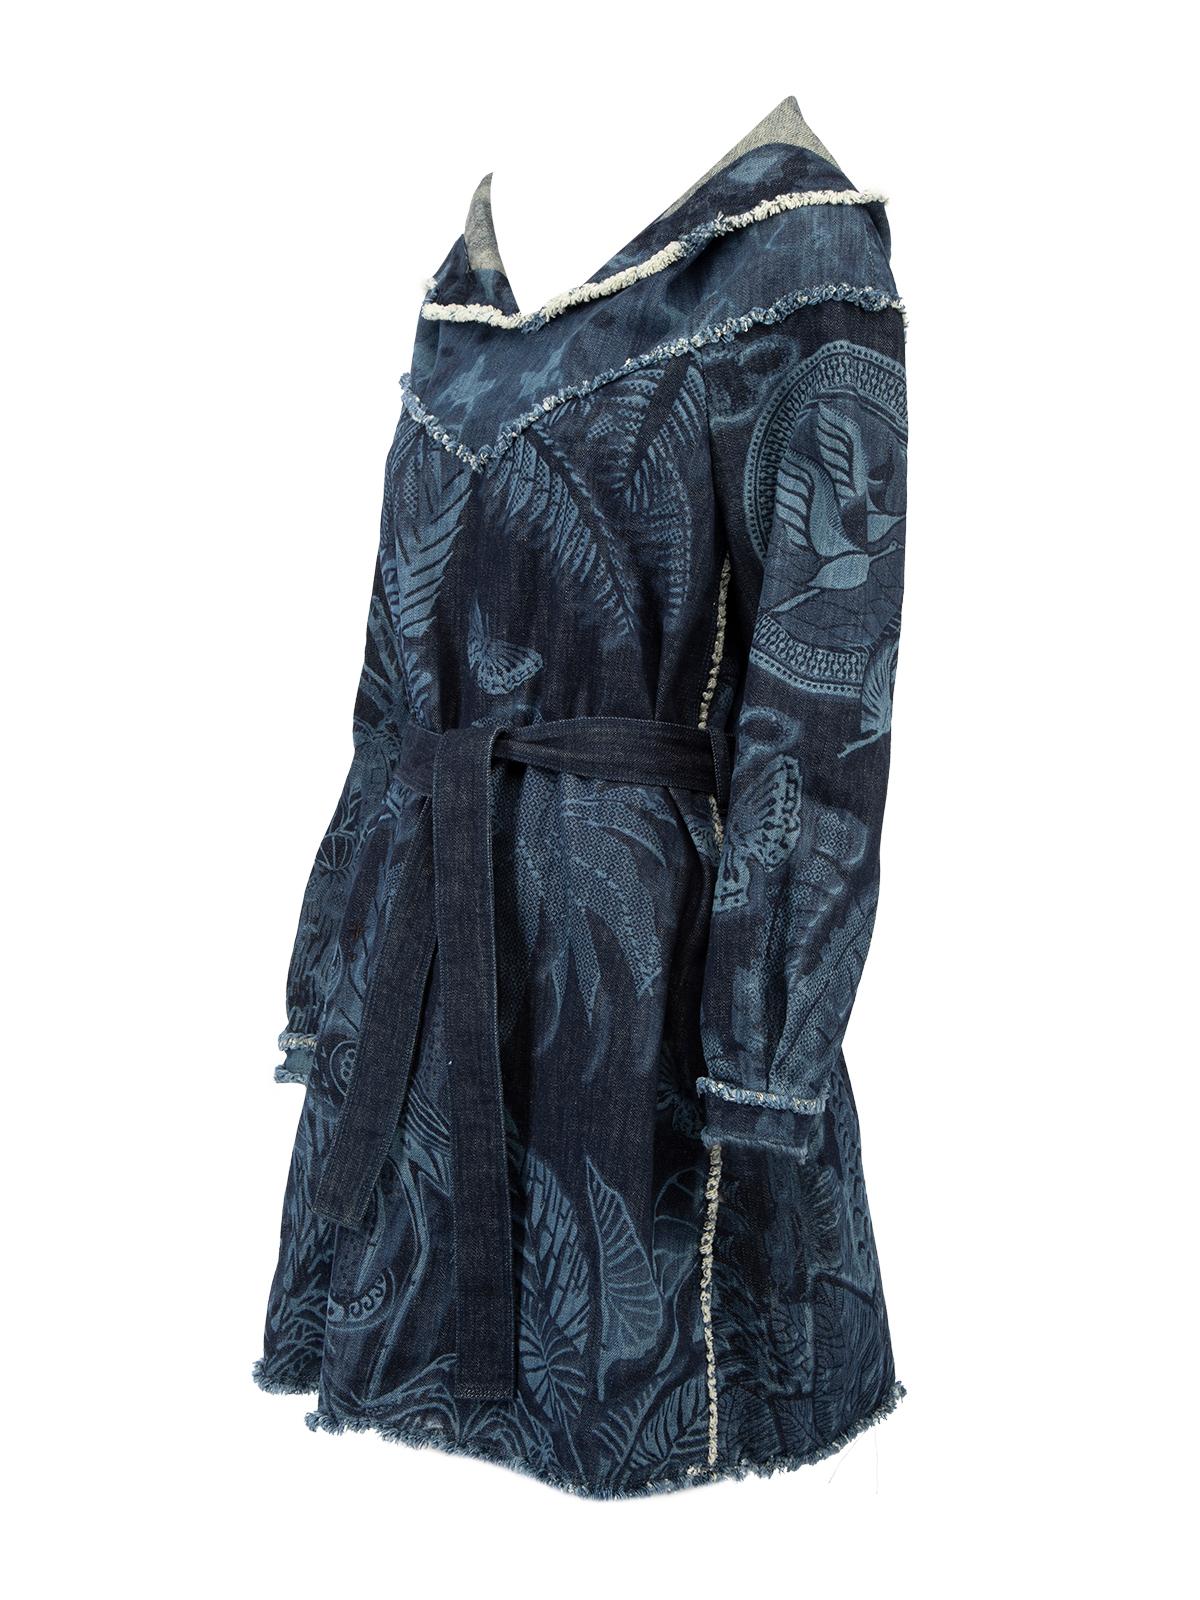 Christian Dior Women's Blue Patterned Denim Dress with Hood and Waist Belt 1